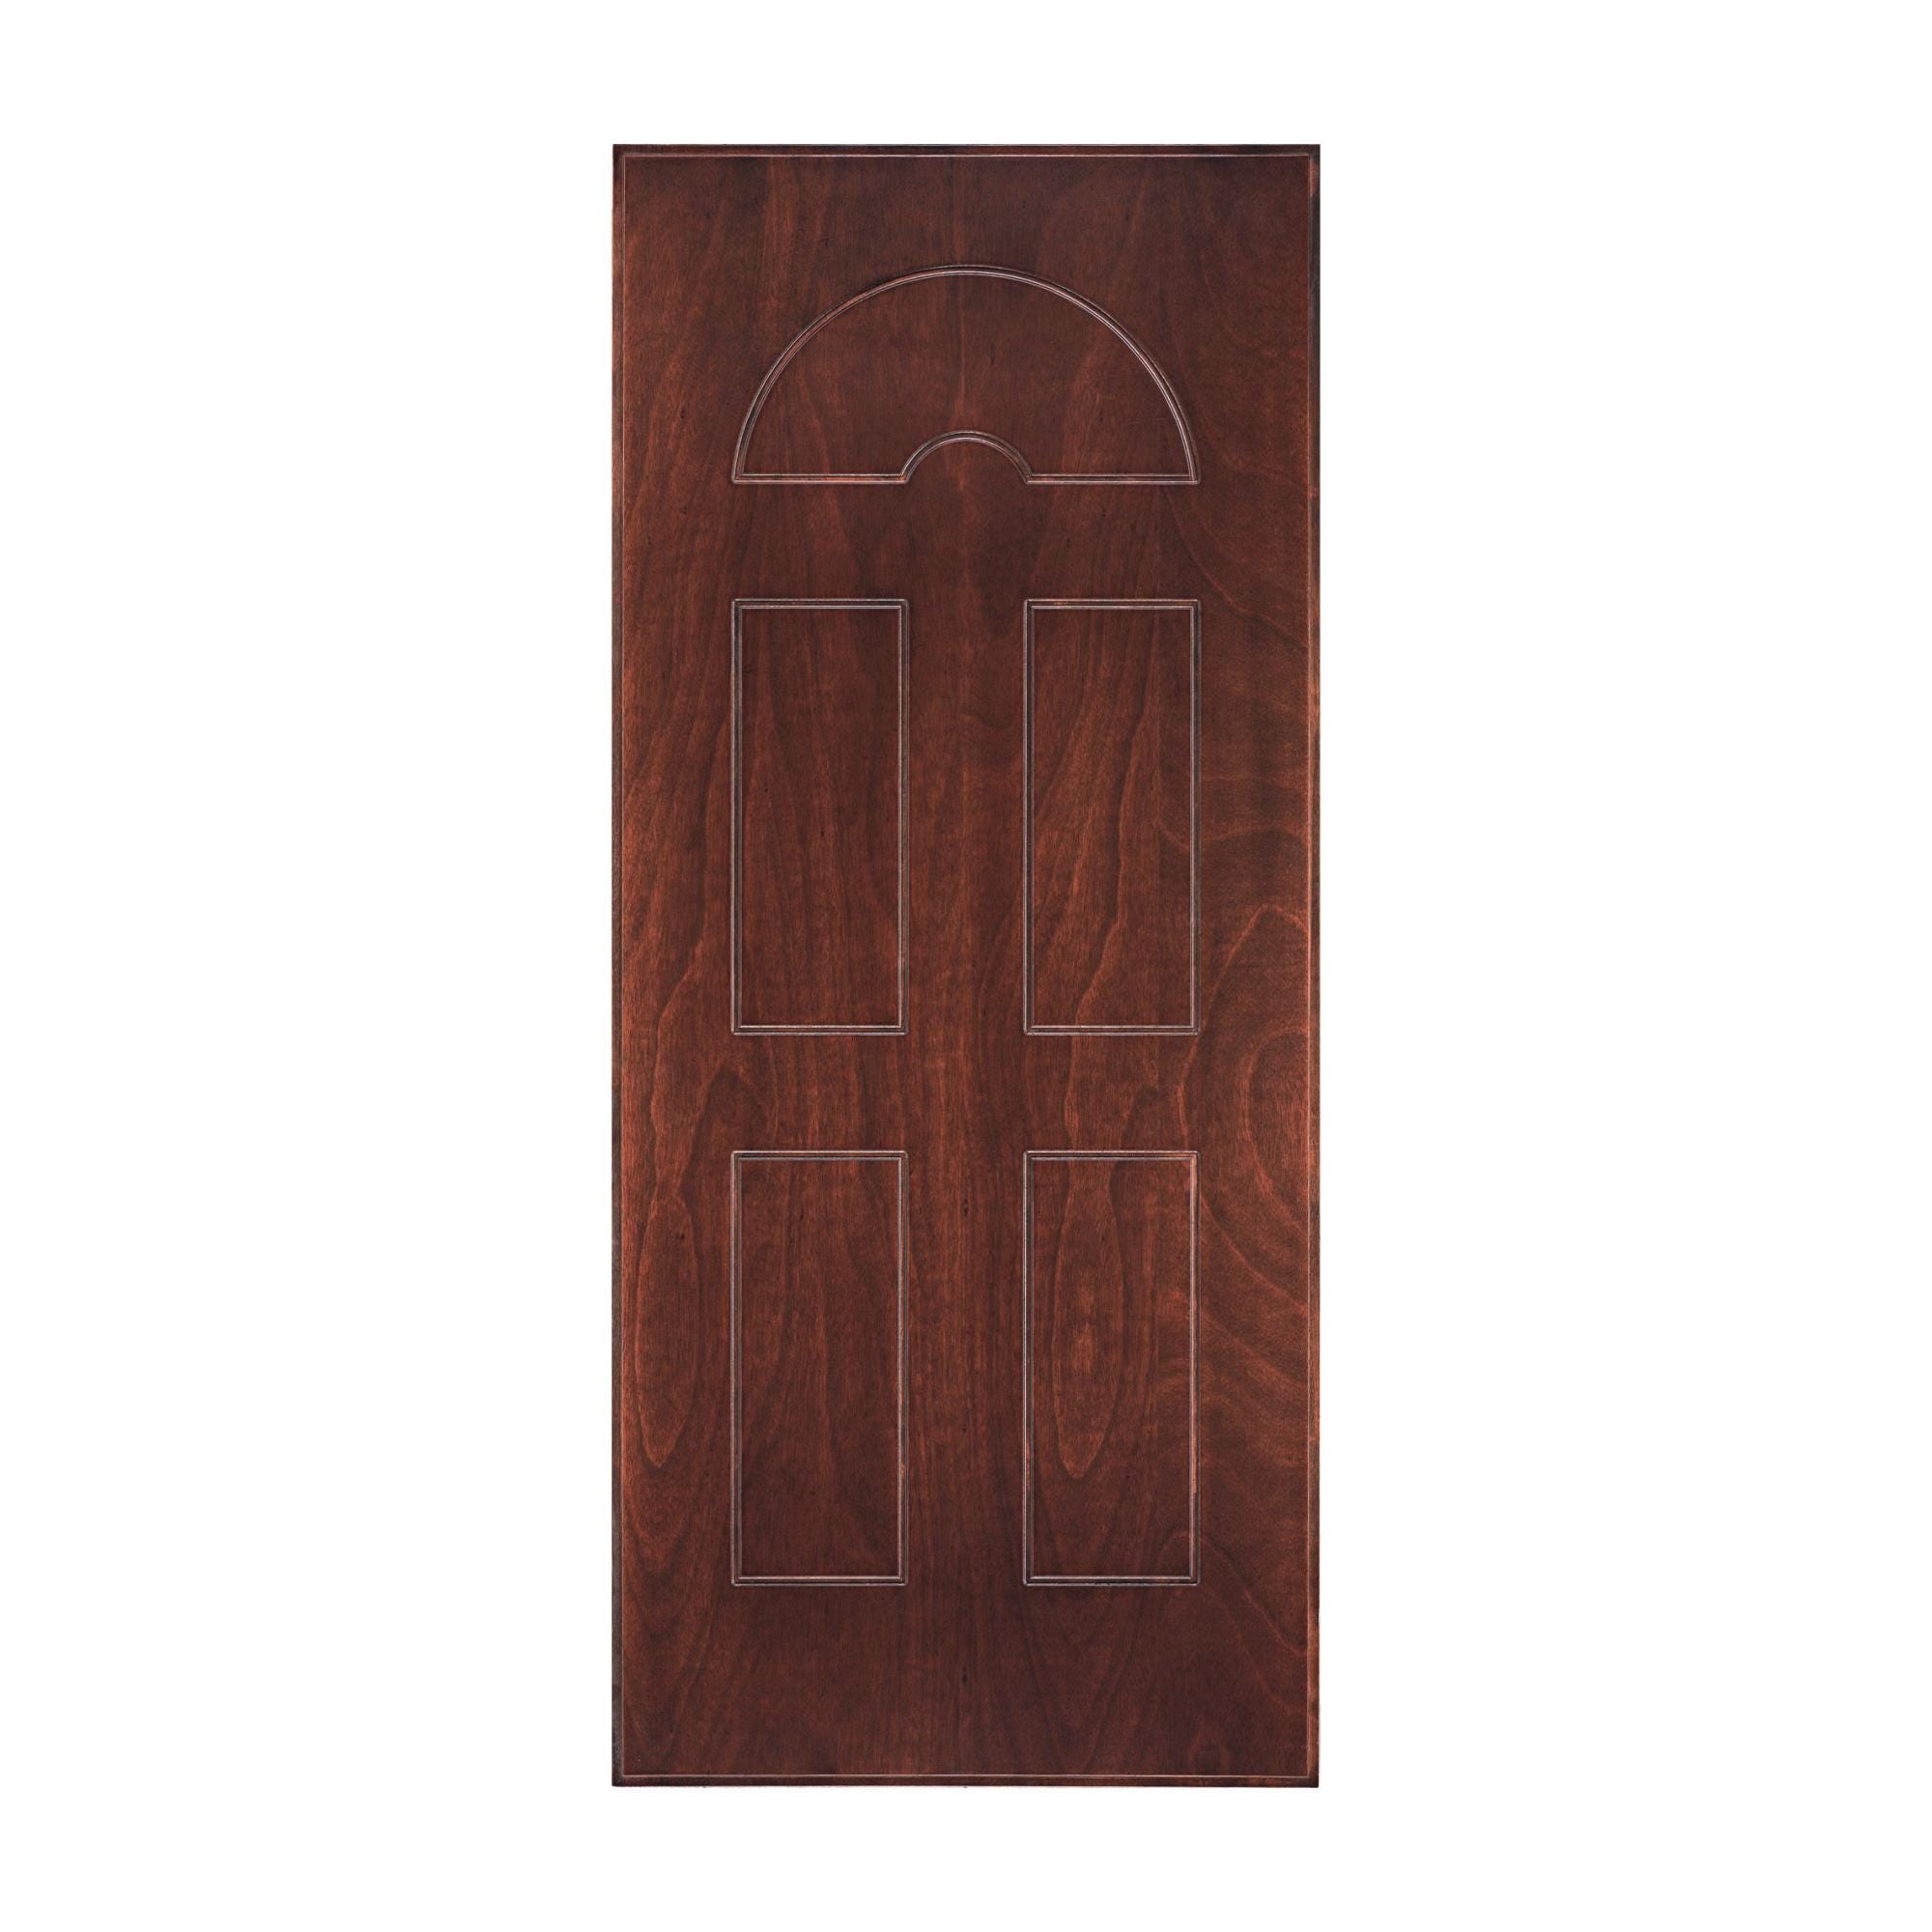 Pannello per porta blindata Okoumè impiallacciato legno prodotto senza  rivestimento noce L 90 x H 210 cm, Sp 8 mm